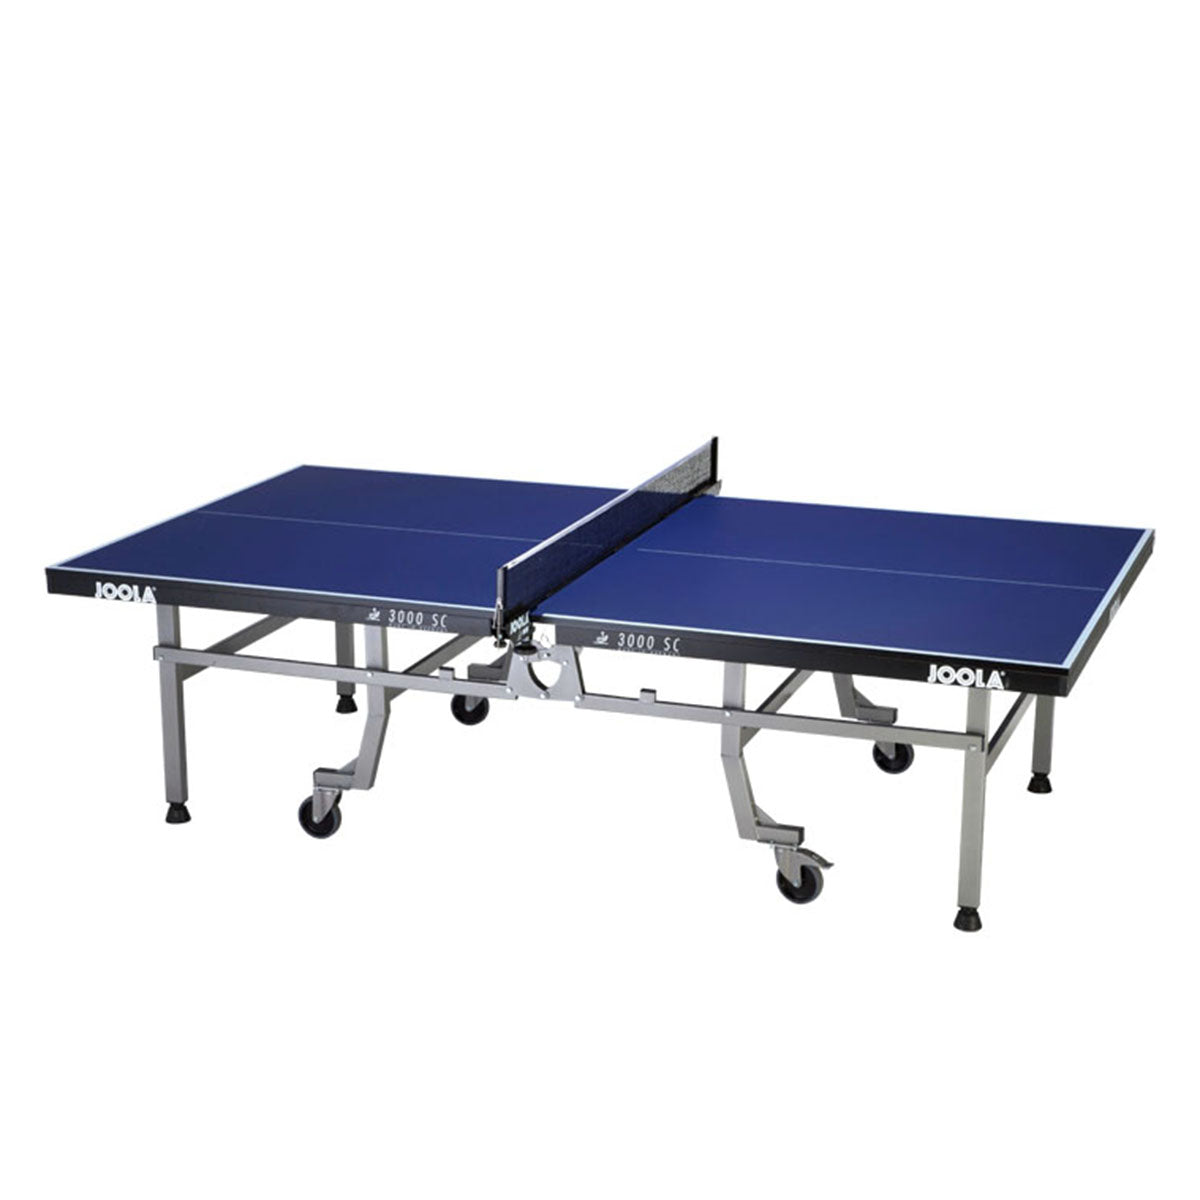 Joola настольный теннис. Профессиональный стол для настольного тенниса. Профессиональный теннисный столик. Настольный теннис поверхность стола.